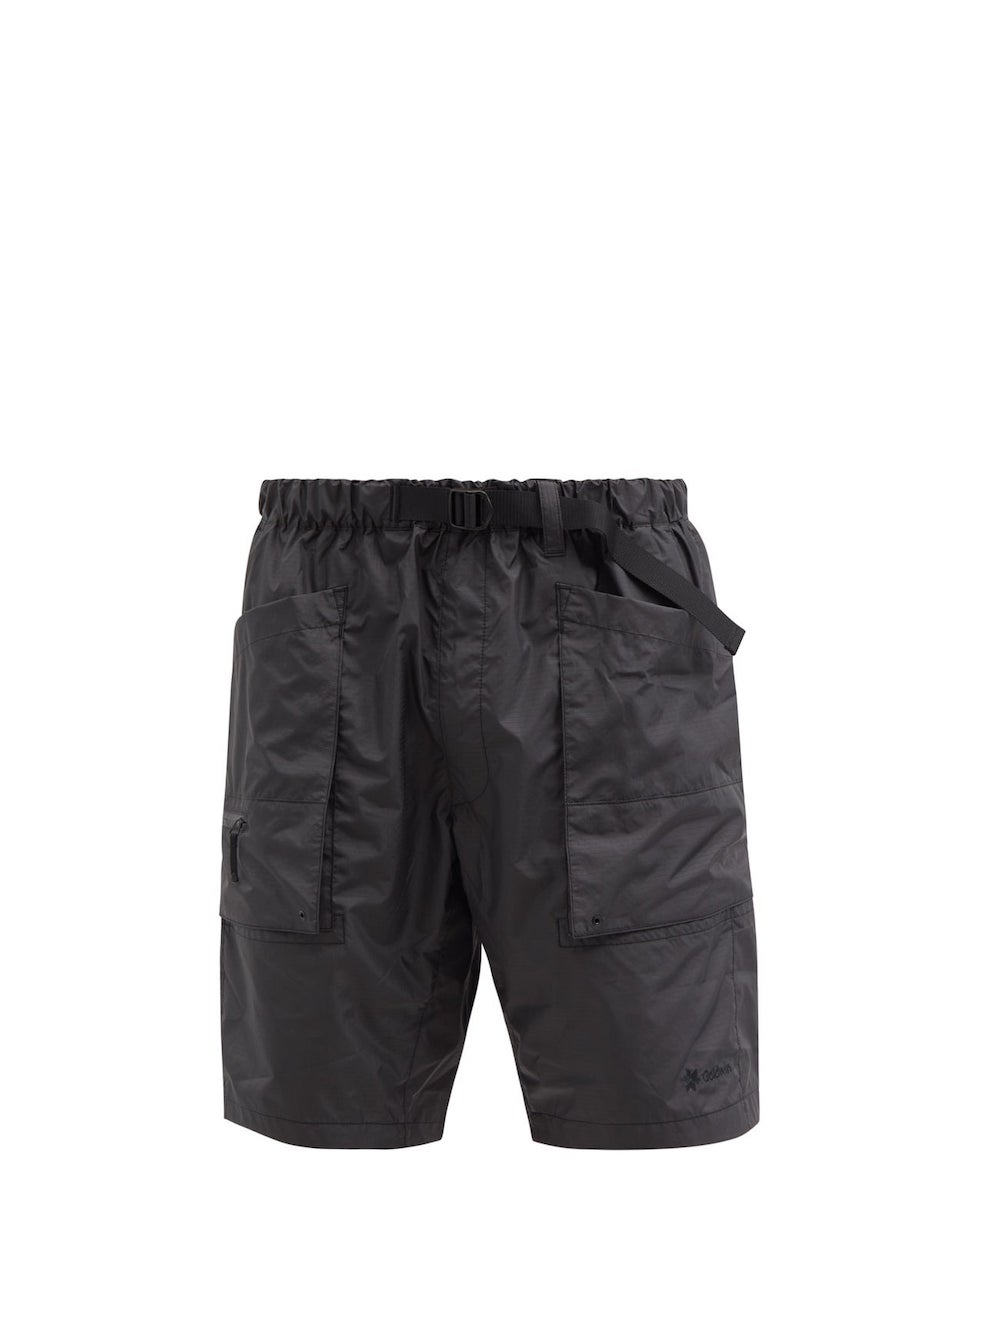 Goldwin Nylon Shorts